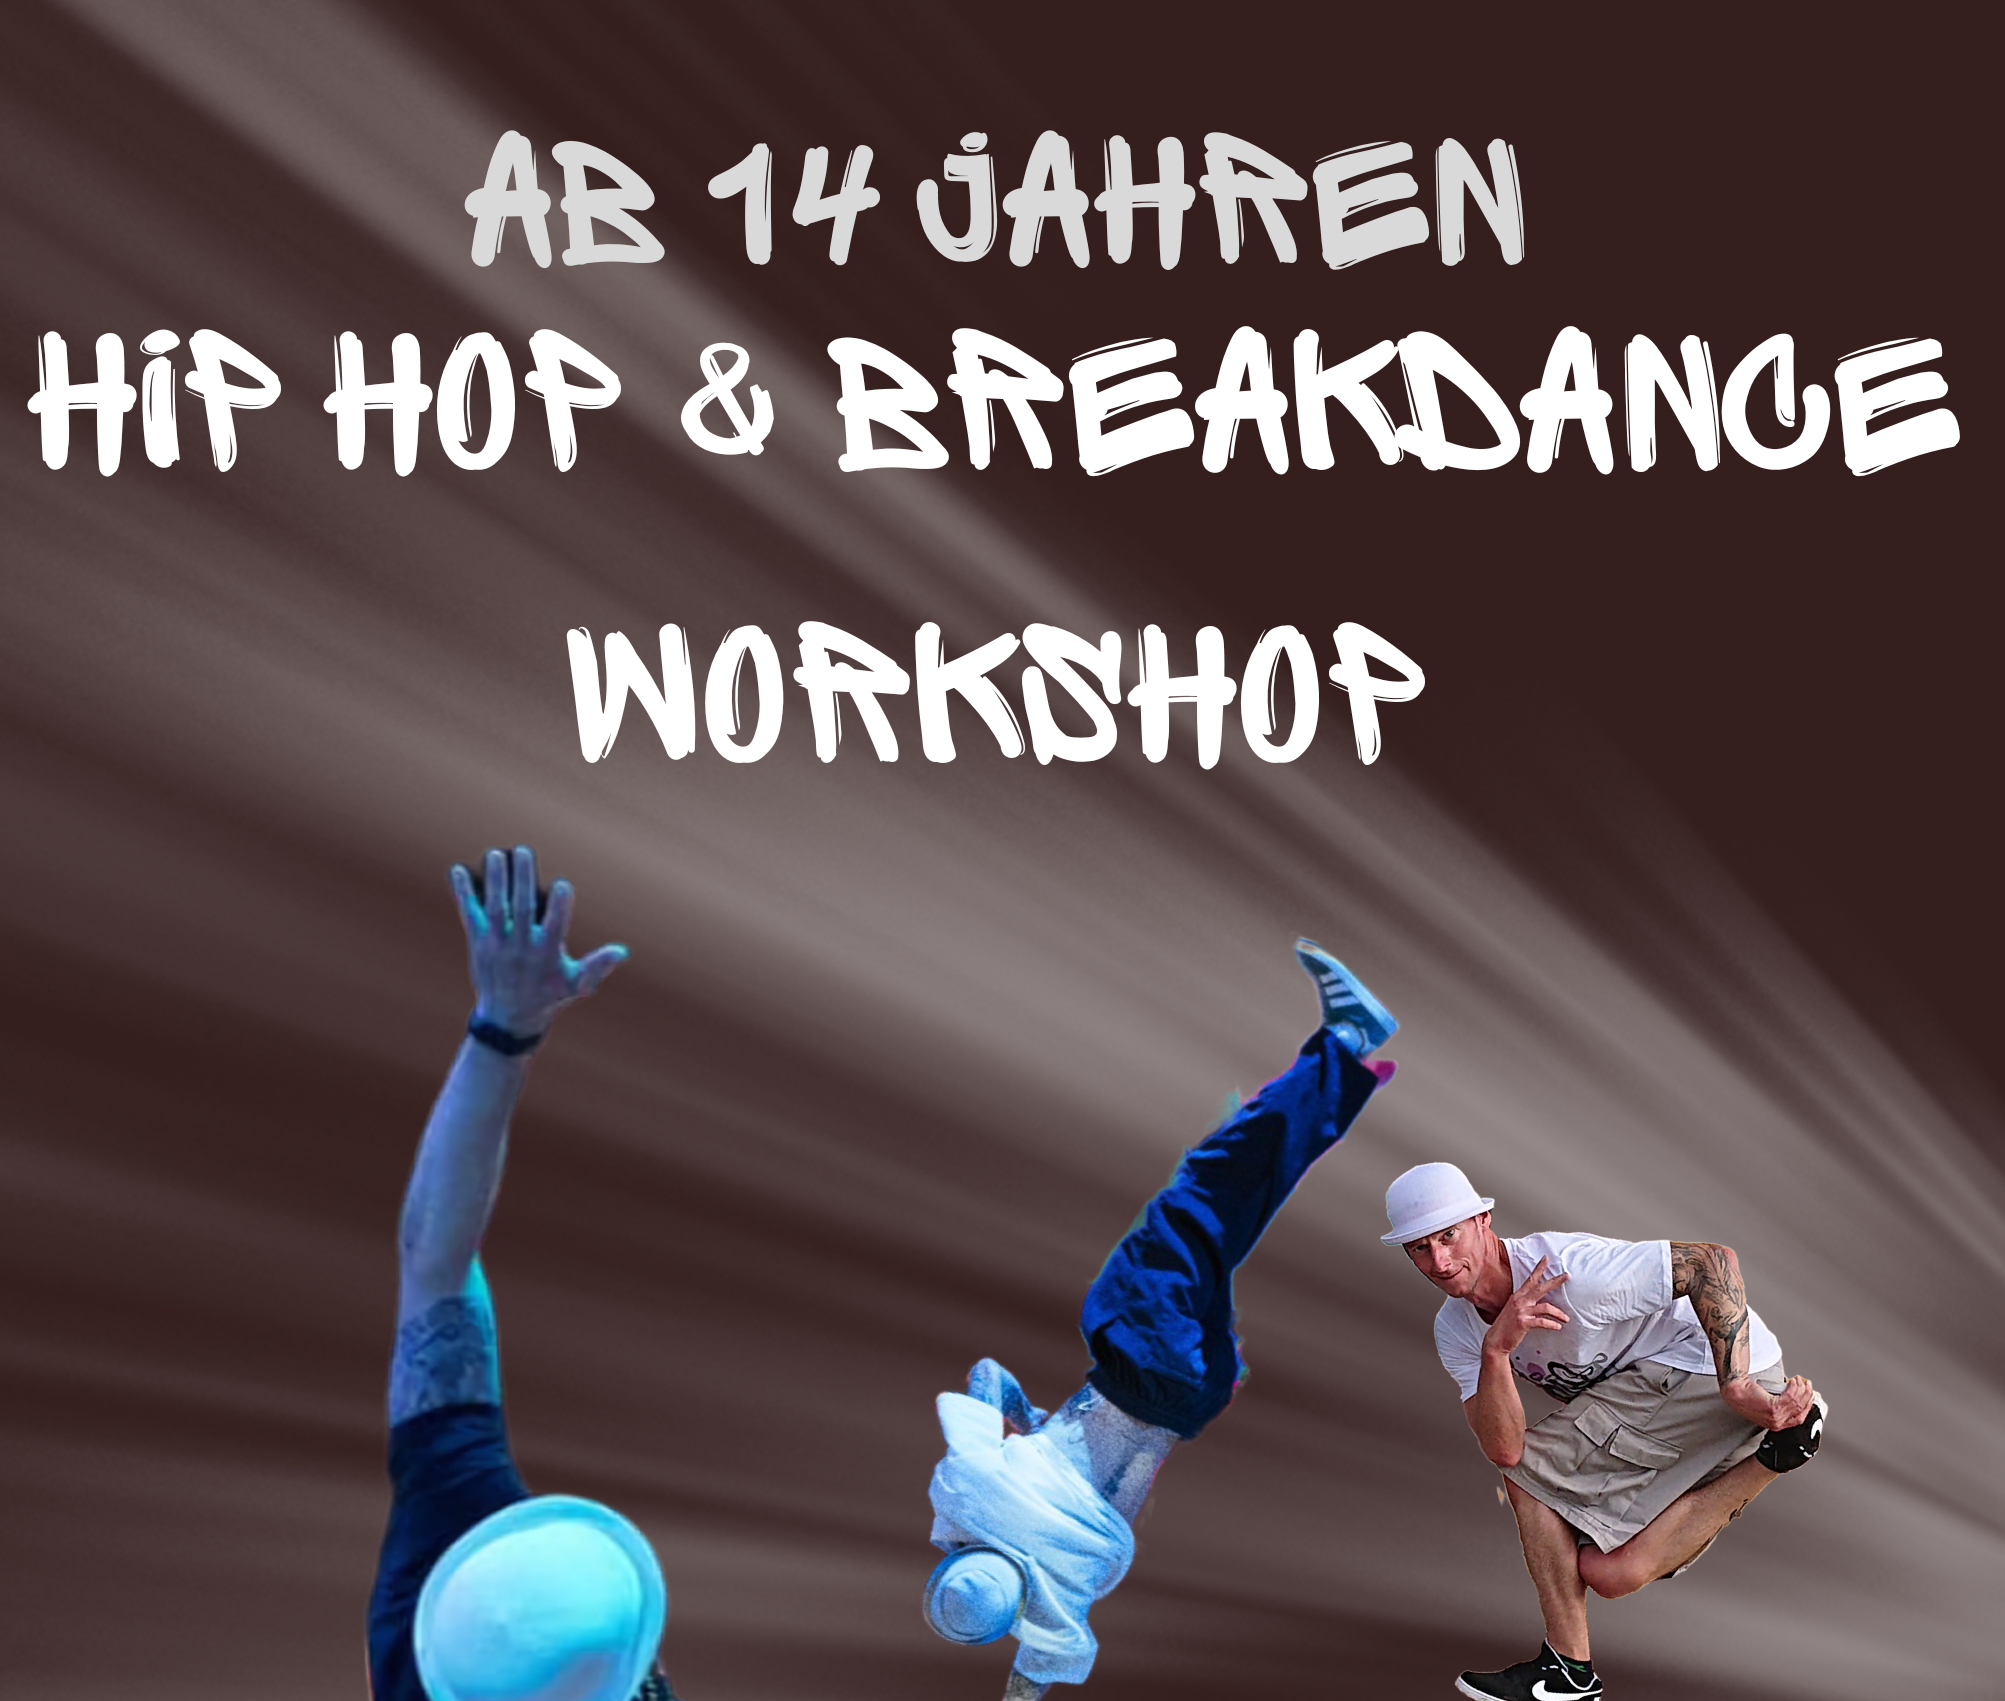 Flyer zum Dance-Workshop